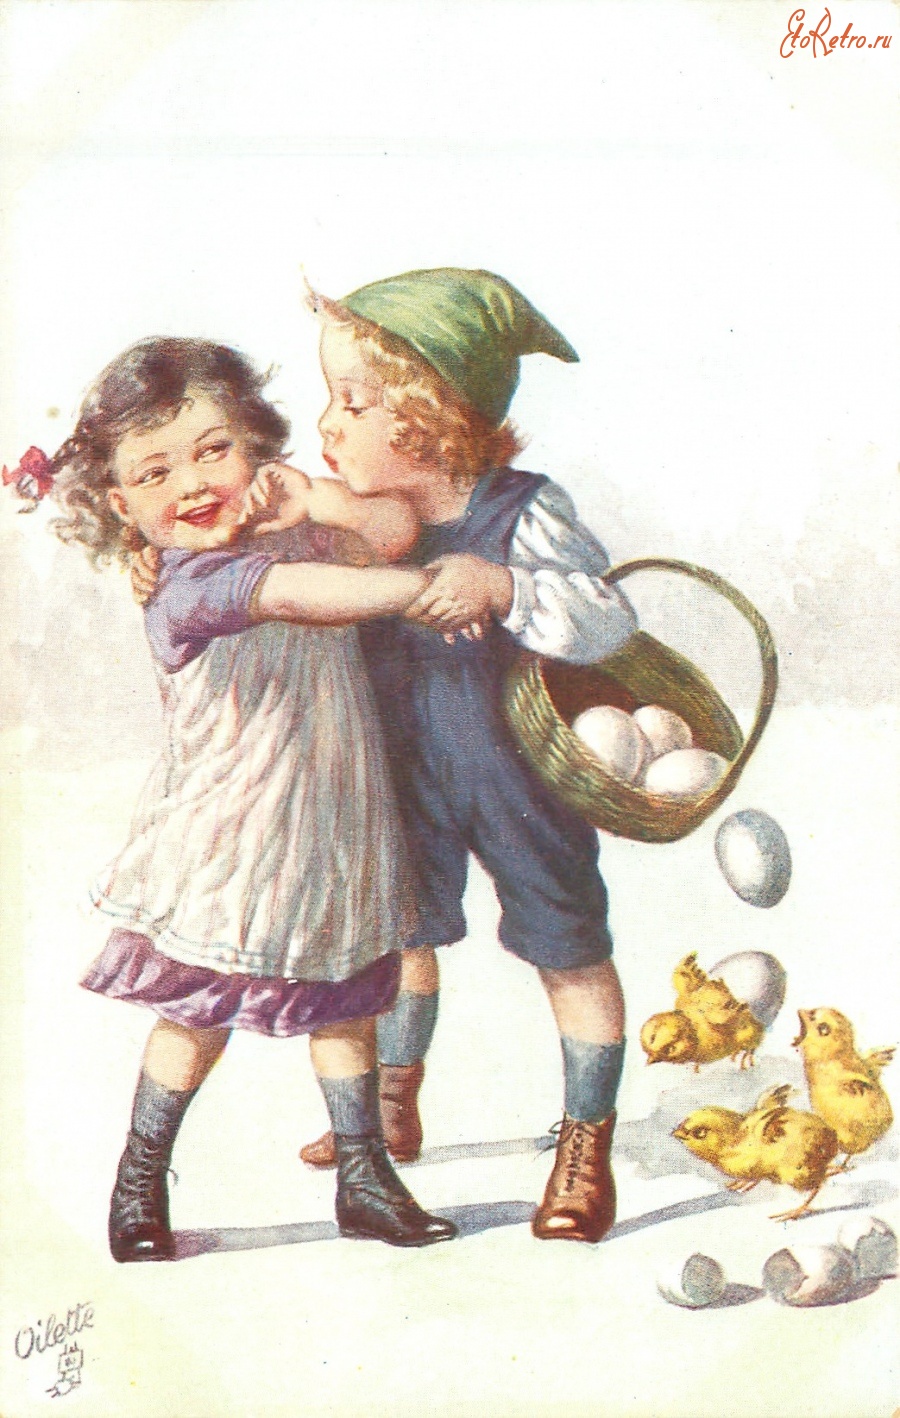 Ретро открытки - Мальчик, девочка, пасхальная корзина и цыплята